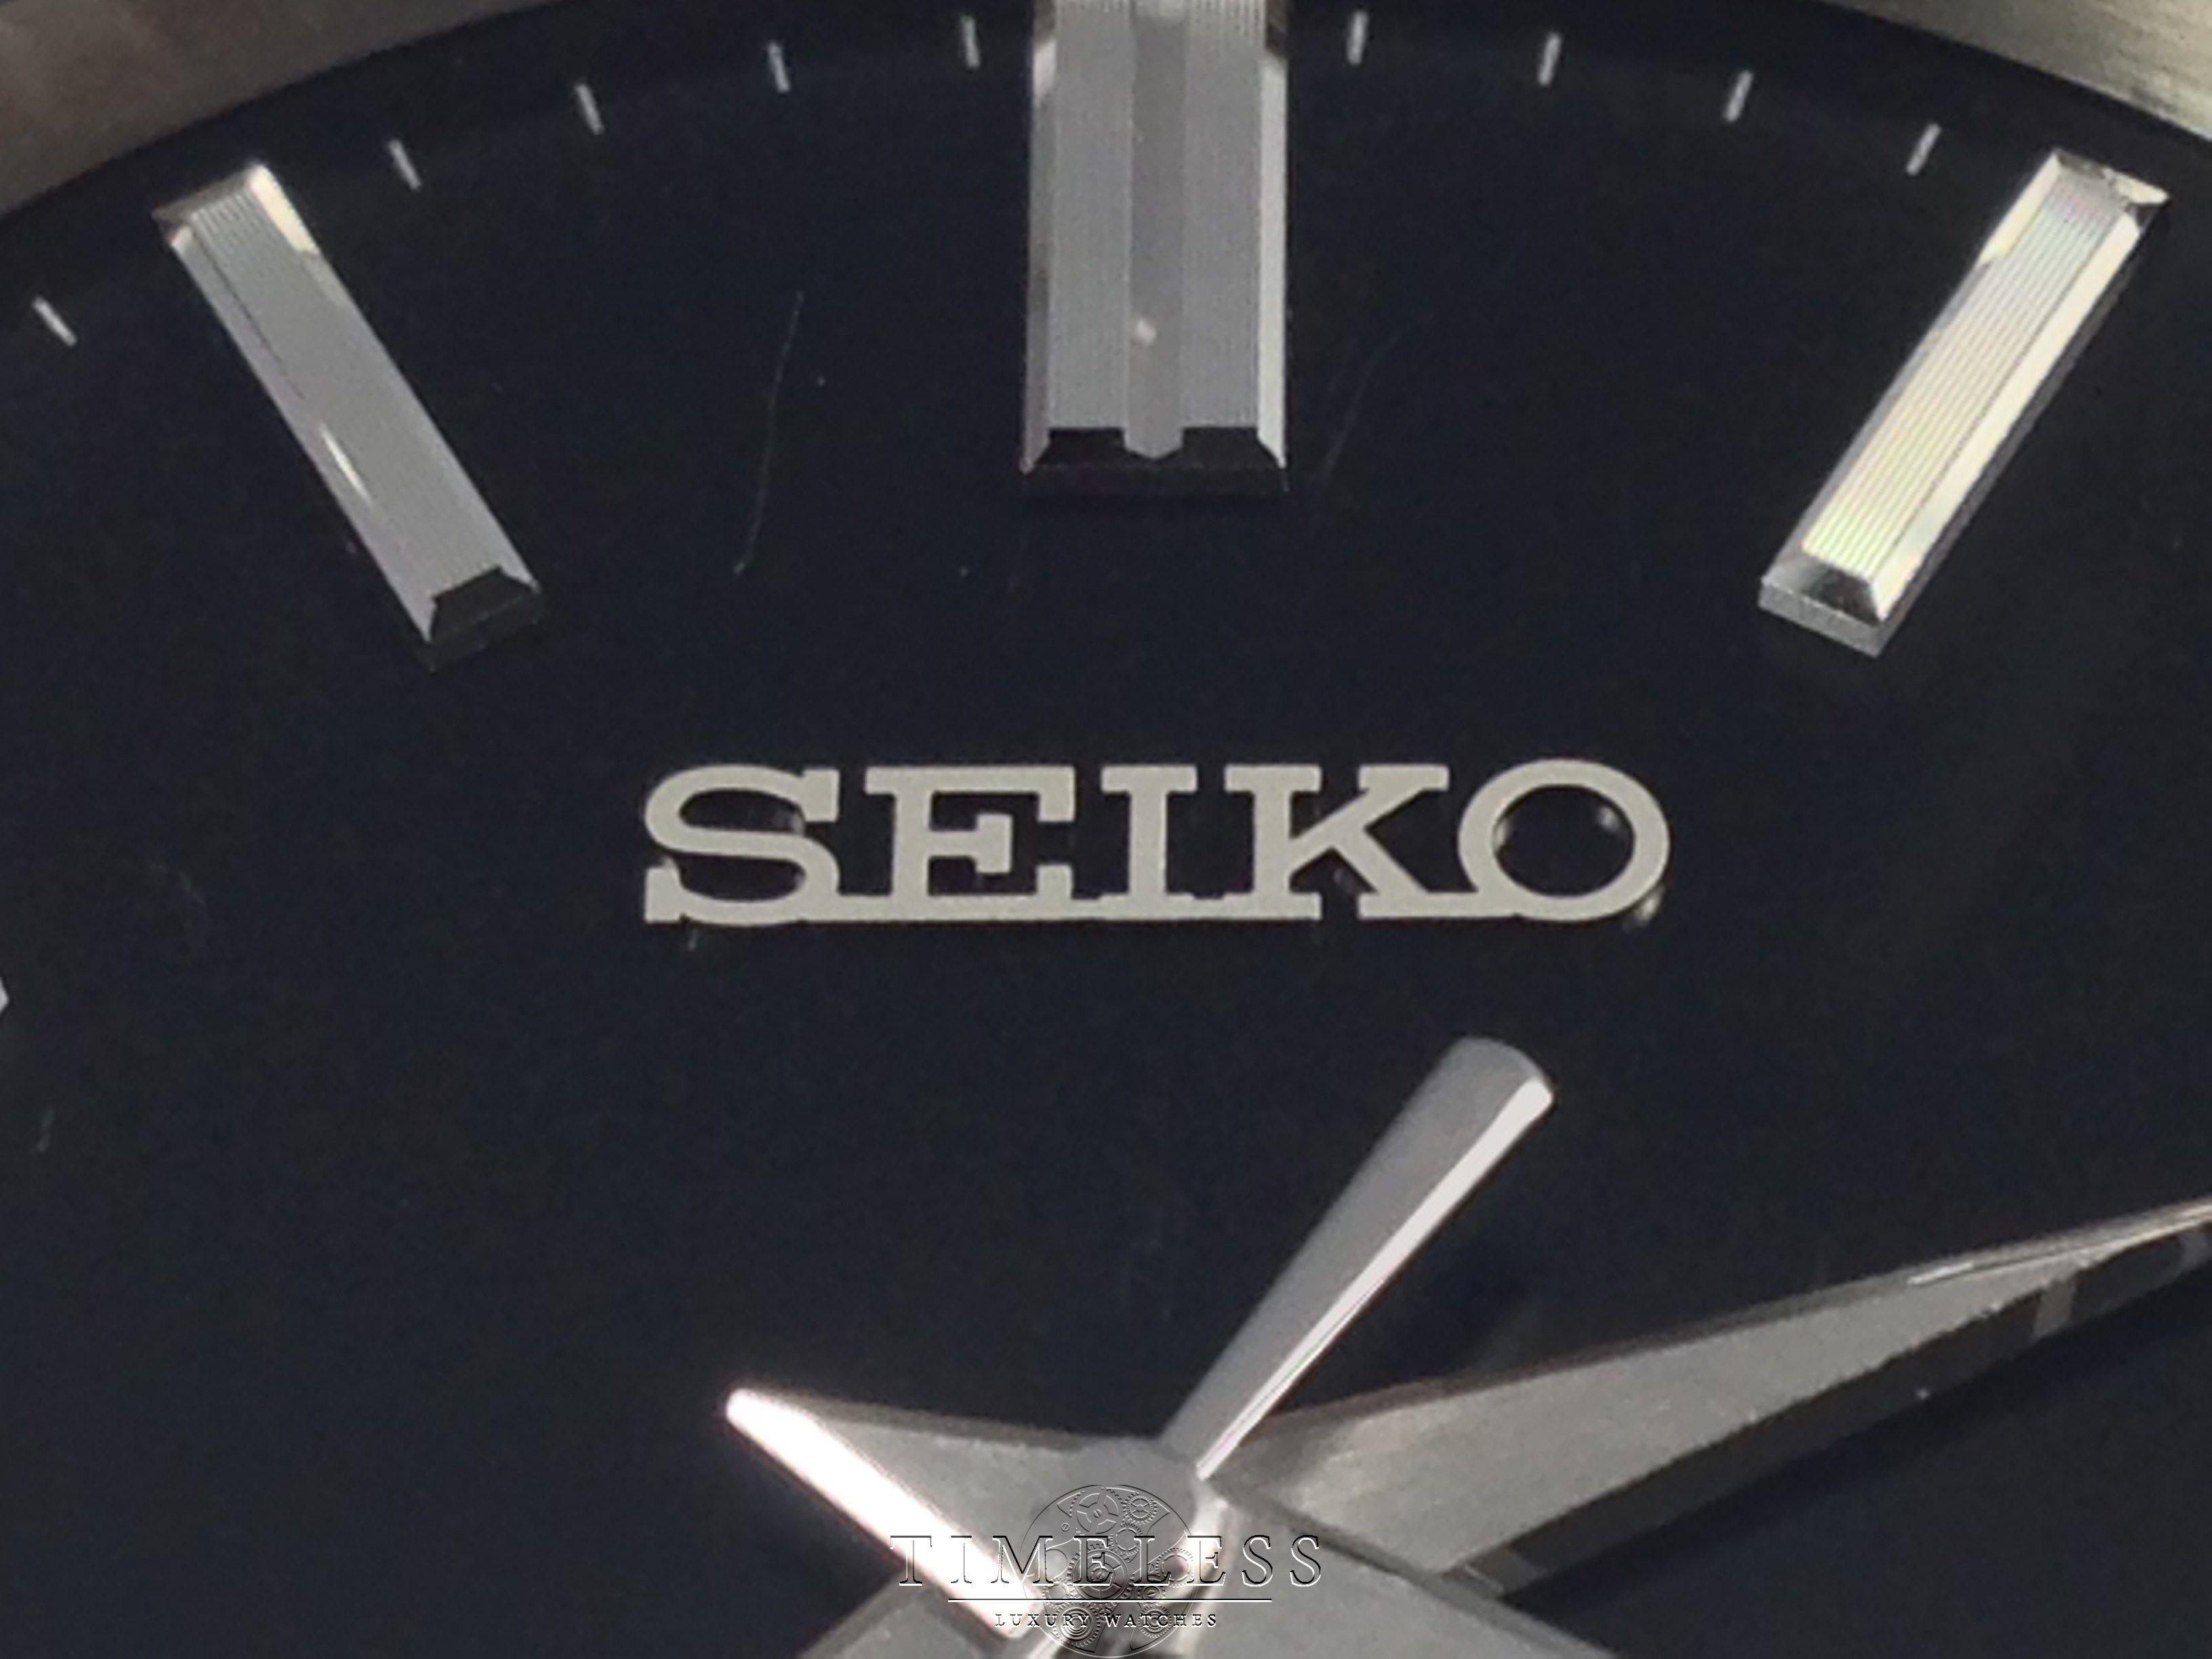 Seiko Logo - Question about Seiko logo on watch